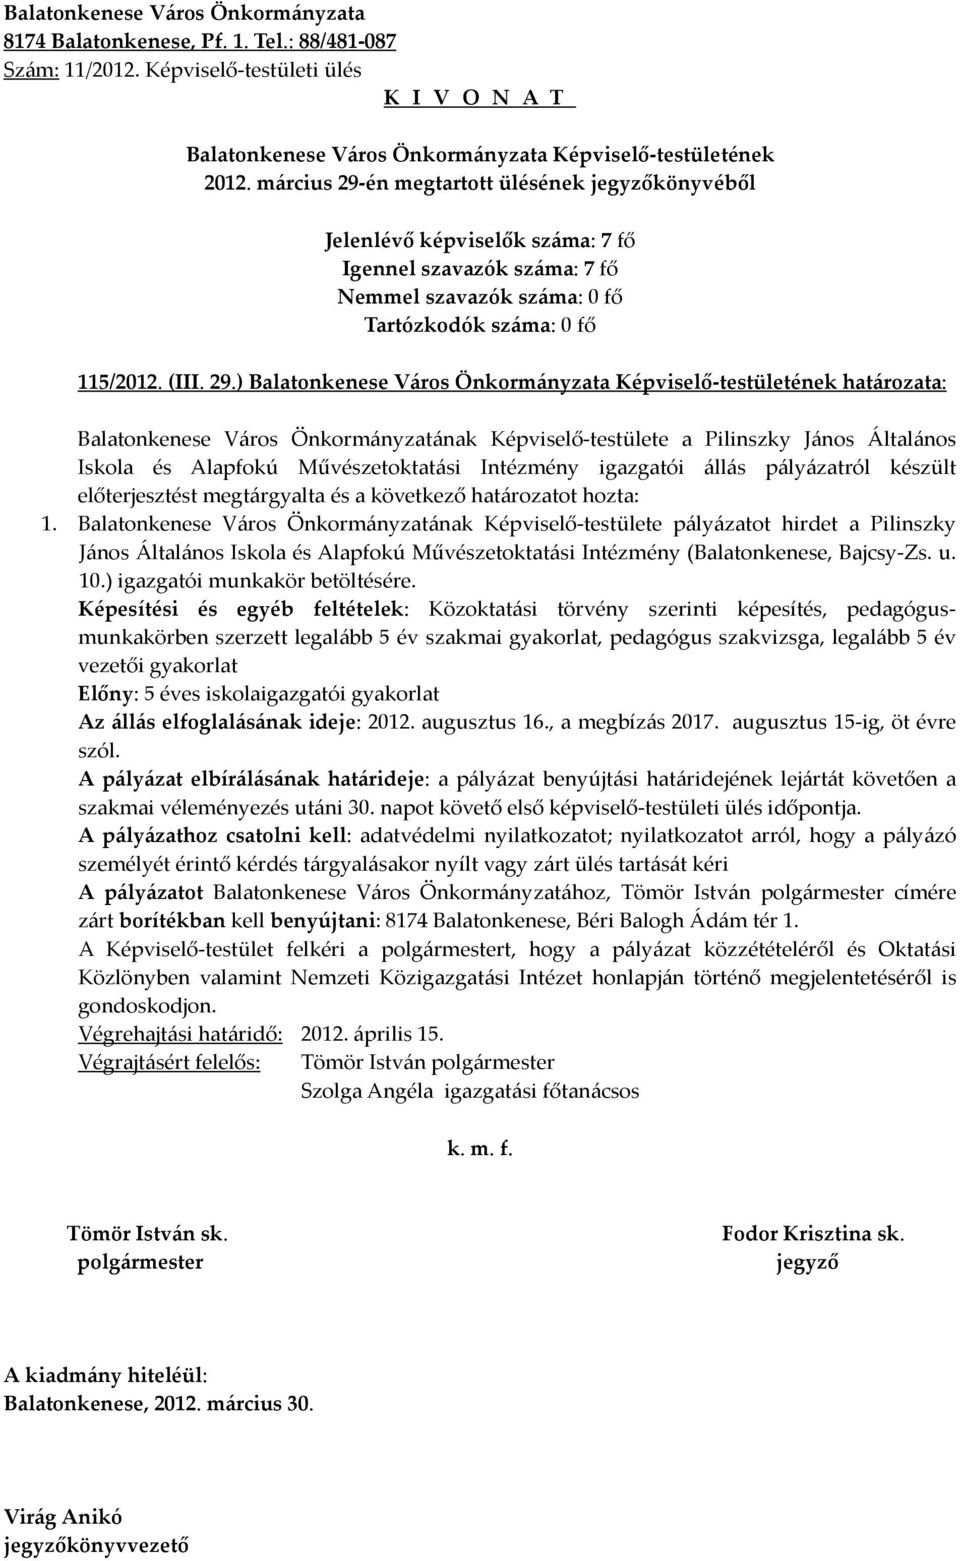 ) határozata: Balatonkenese Város Önkormányzatának Képviselő-testülete a Pilinszky János Általános Iskola és Alapfokú Művészetoktatási Intézmény igazgatói állás pályázatról készült előterjesztést